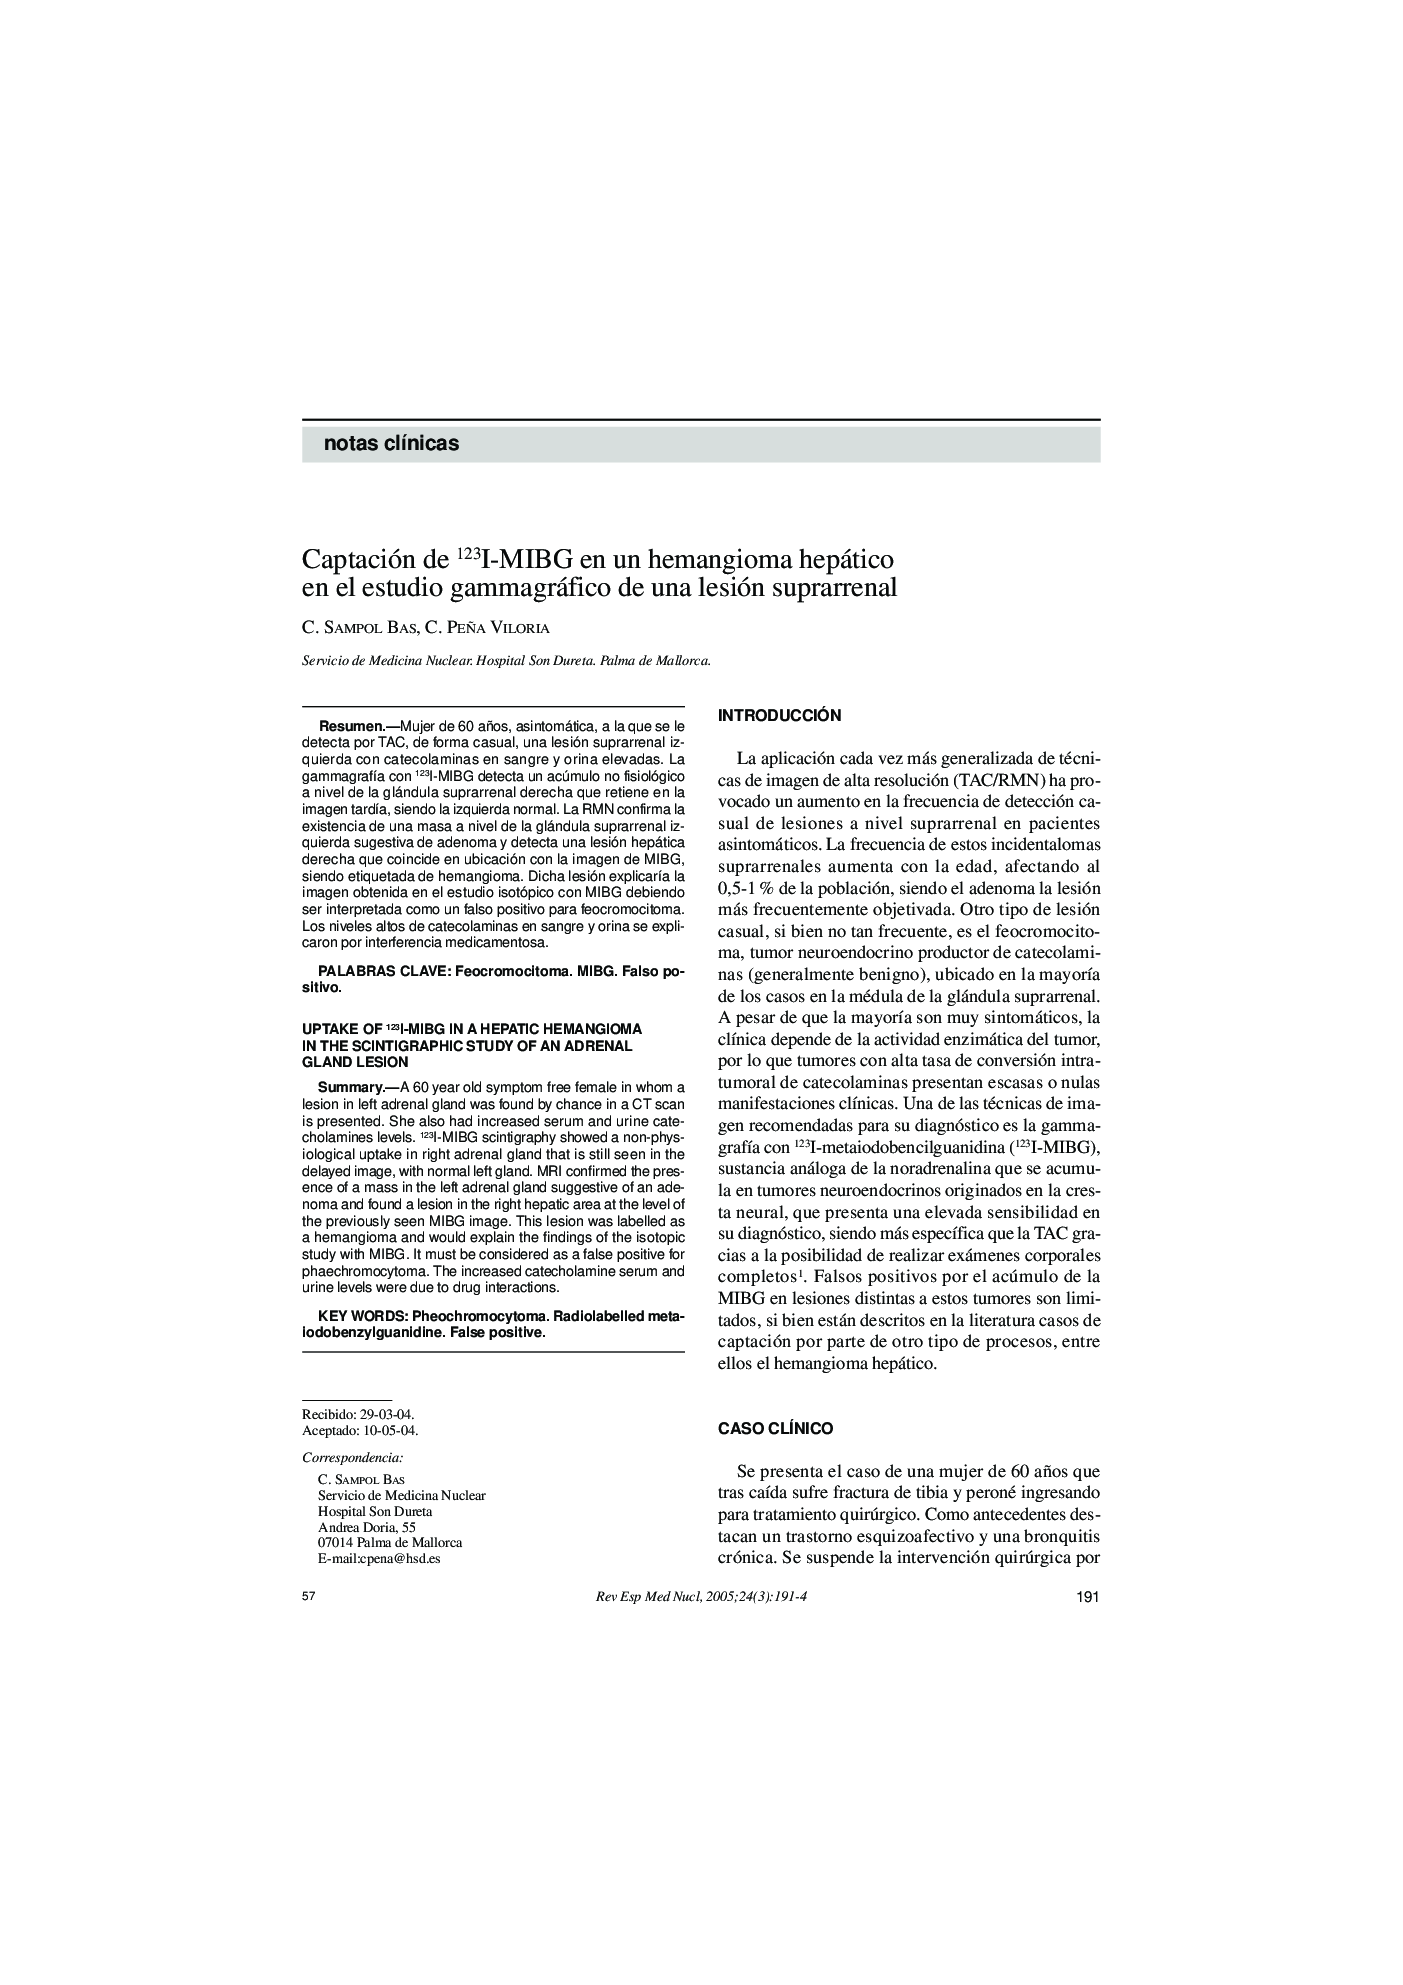 Captación de 123I-MIBG en un hemangioma hepático en el estudio gammagráfico de una lesión suprarrenal